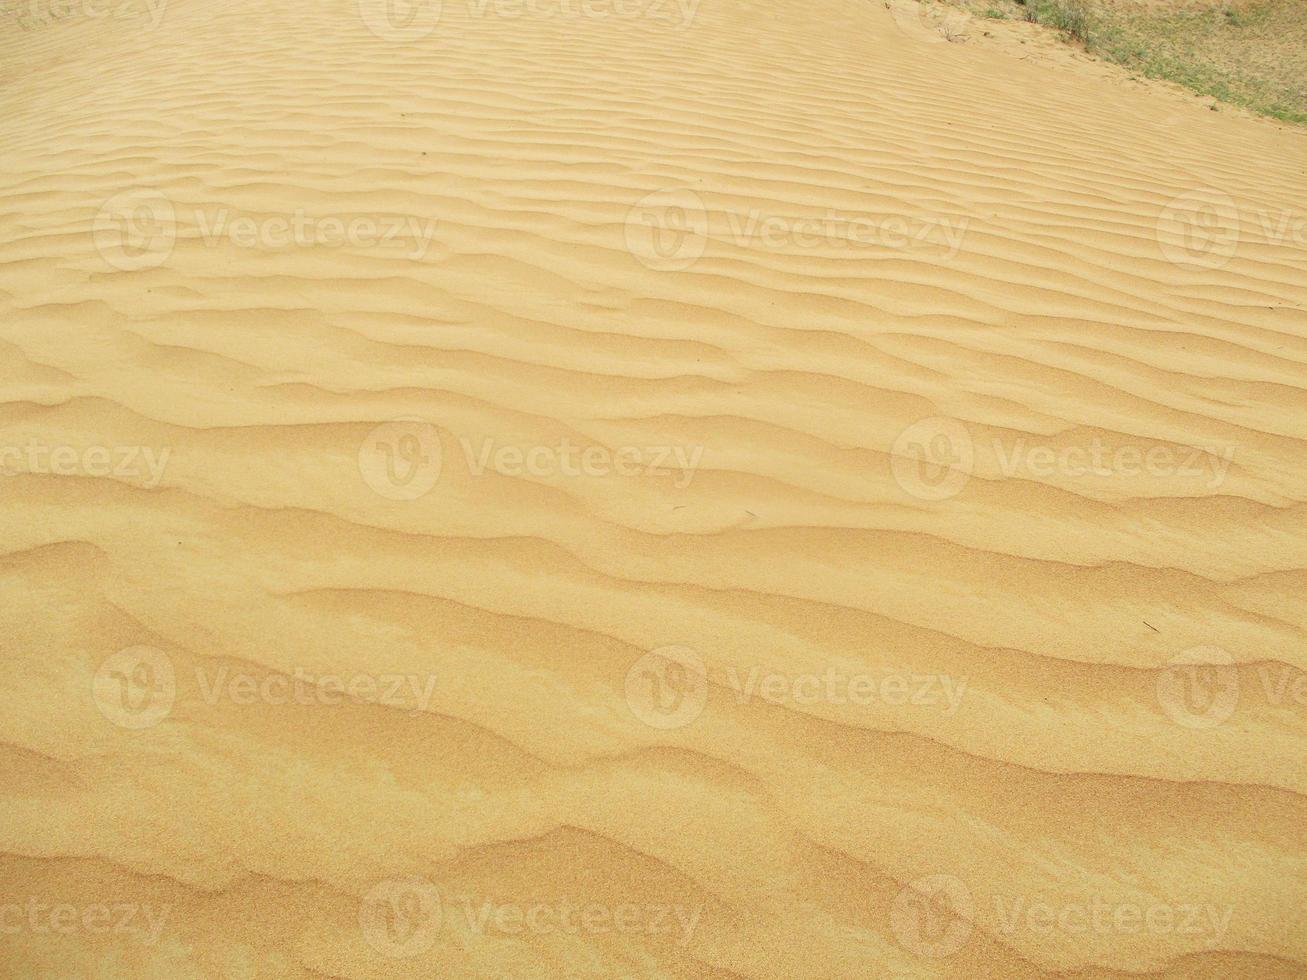 golven van zand textuur. duinen van de woestijn. woestijn duinen zonsondergang landschap. foto